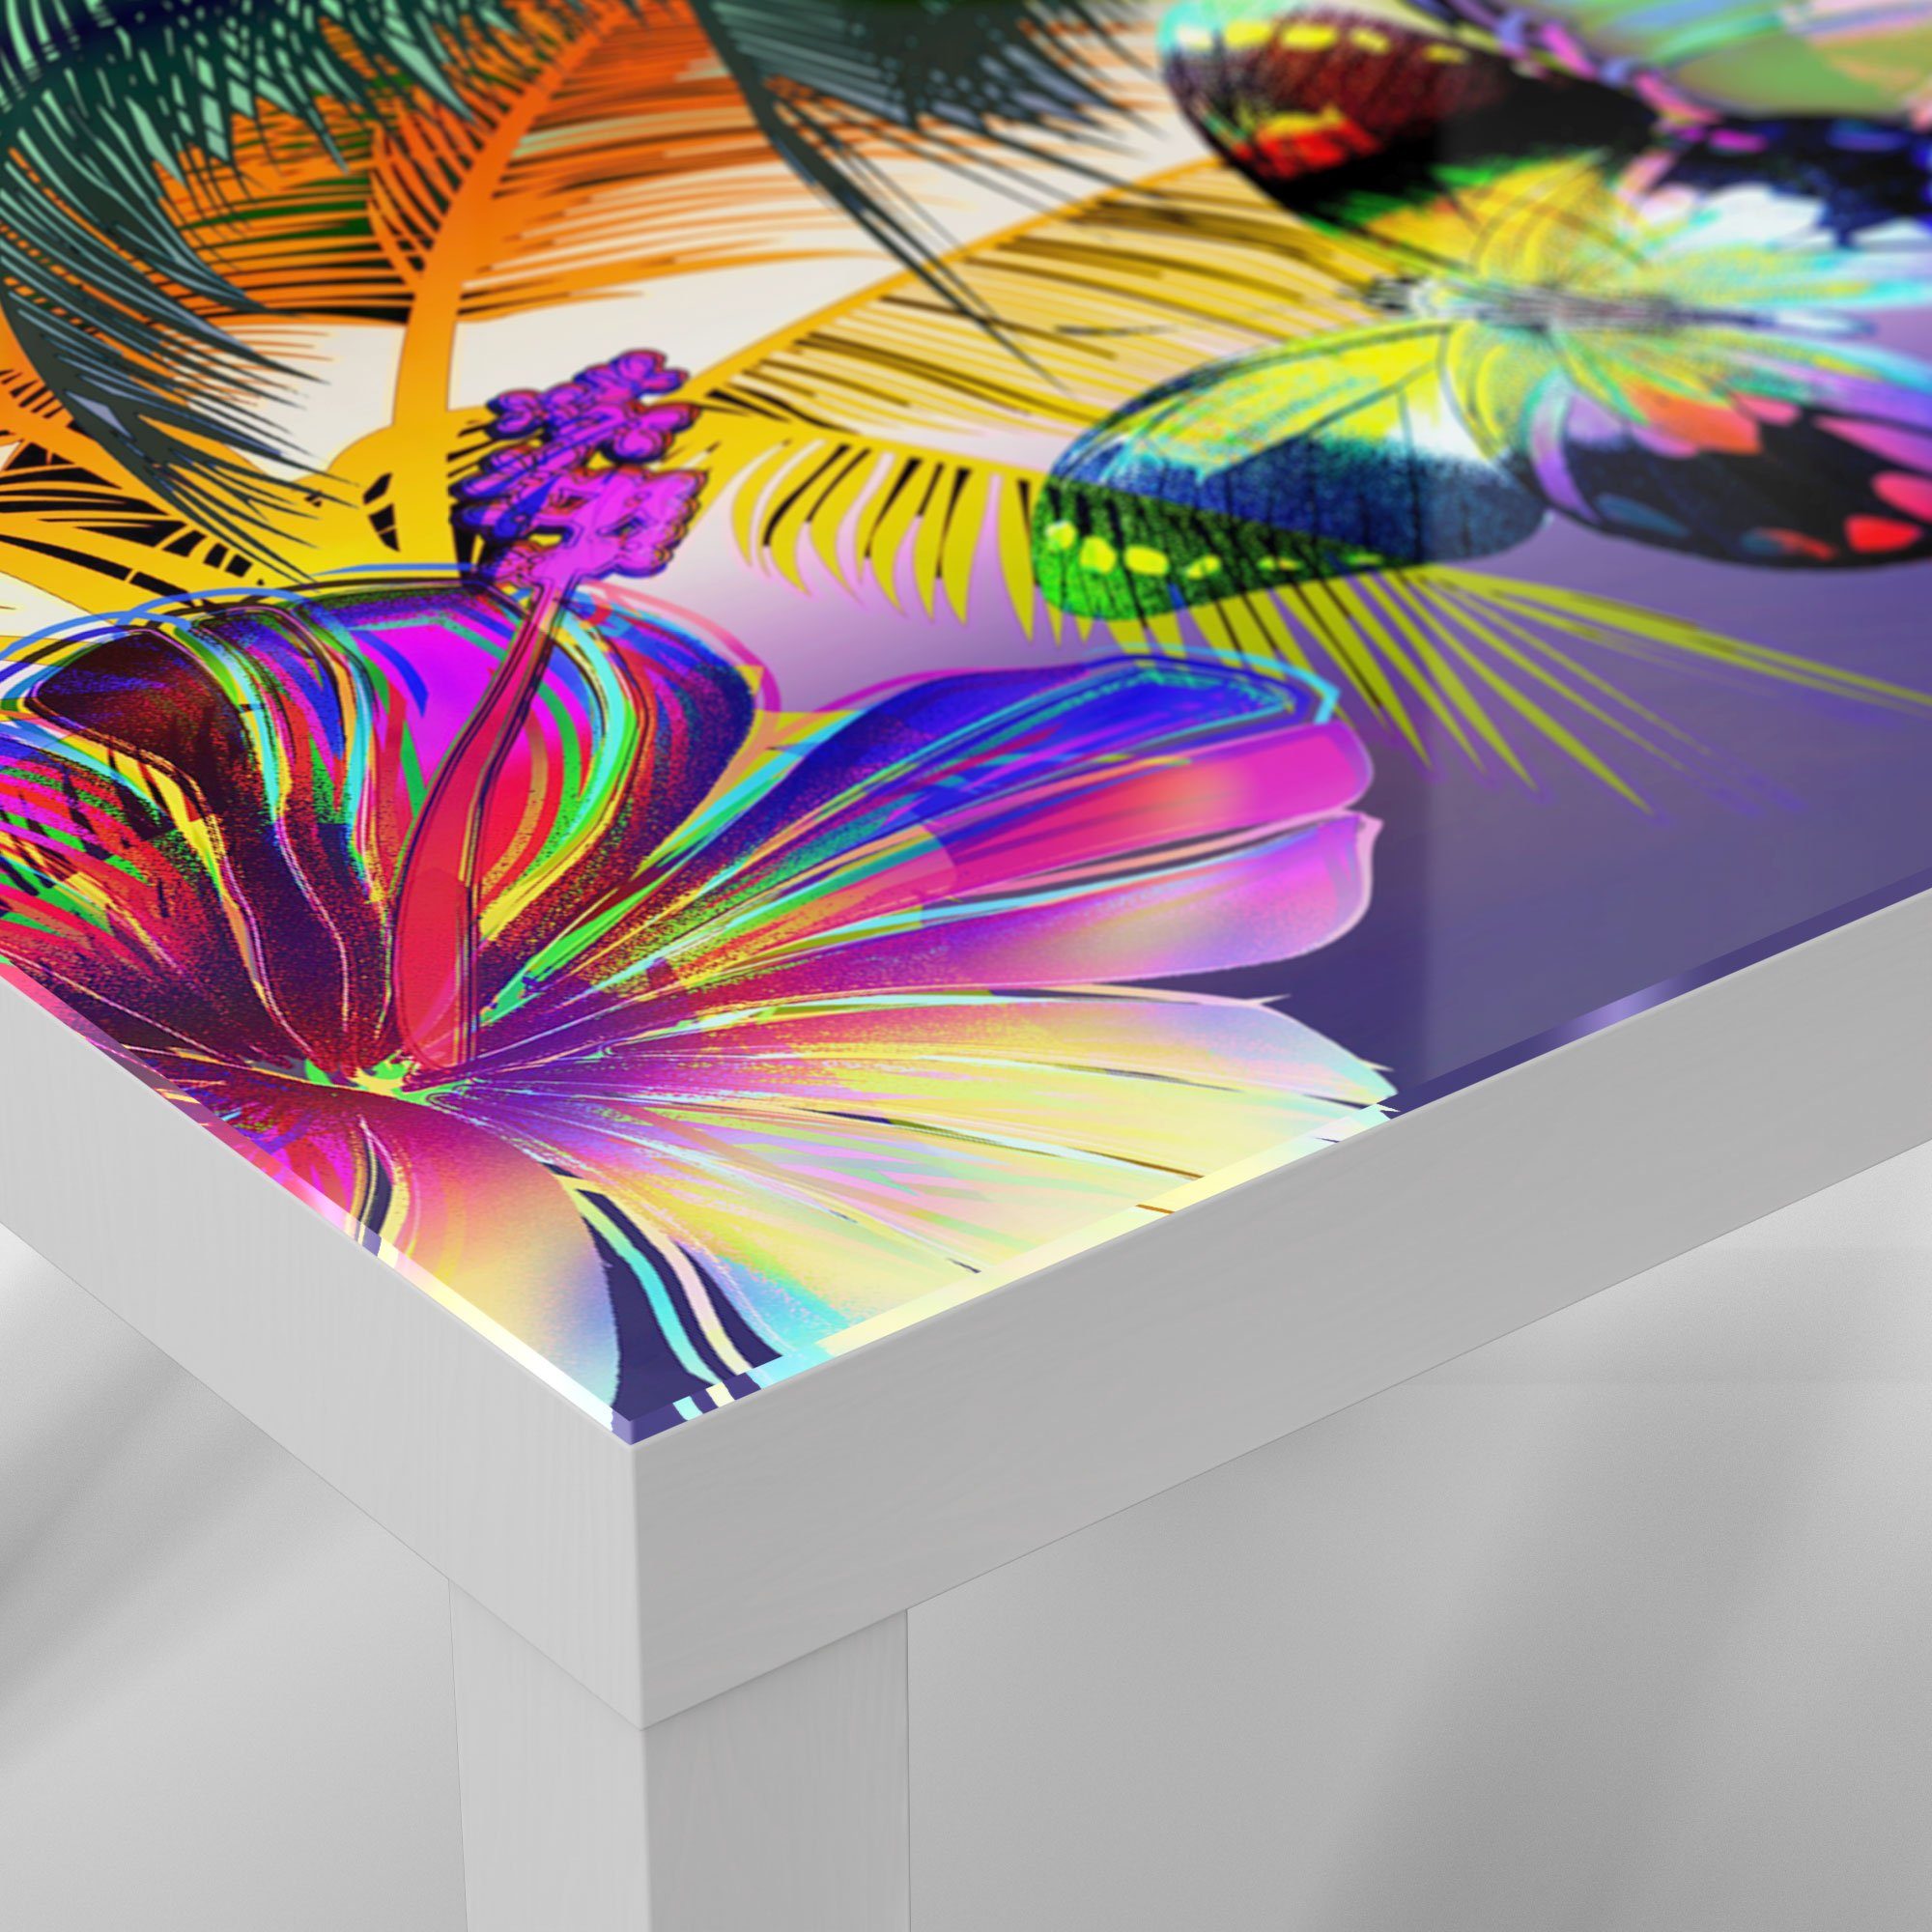 Beistelltisch 'Tropisches Weiß Glastisch modern Couchtisch Farbenspiel', DEQORI Glas